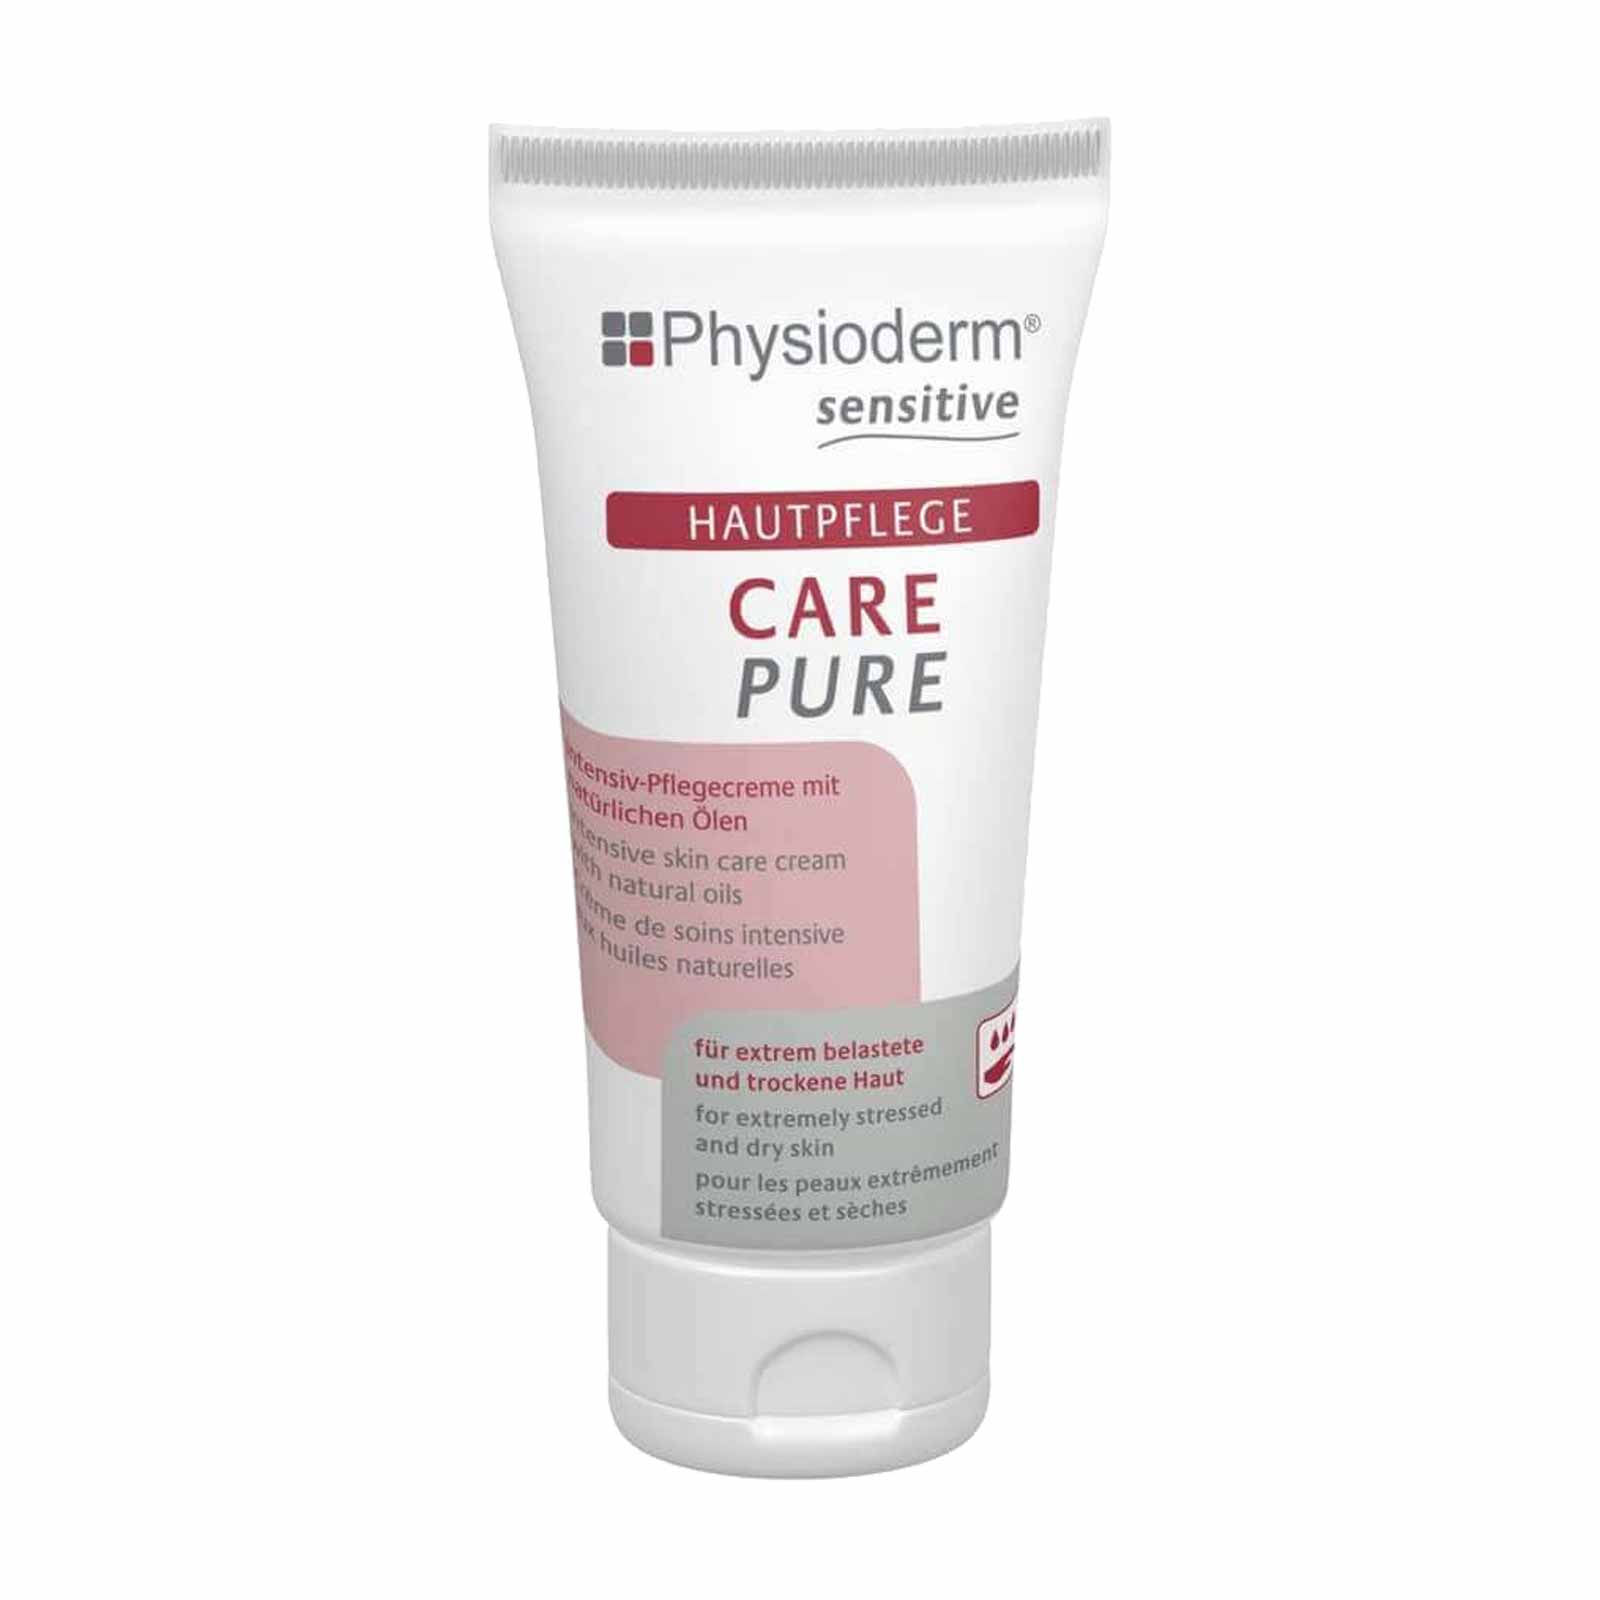 PHYSIODERM Hautpflegecreme CARE PURE 50ml, Pflegecreme Handpflege Gesichtspflege Menge:1 von Physioderm